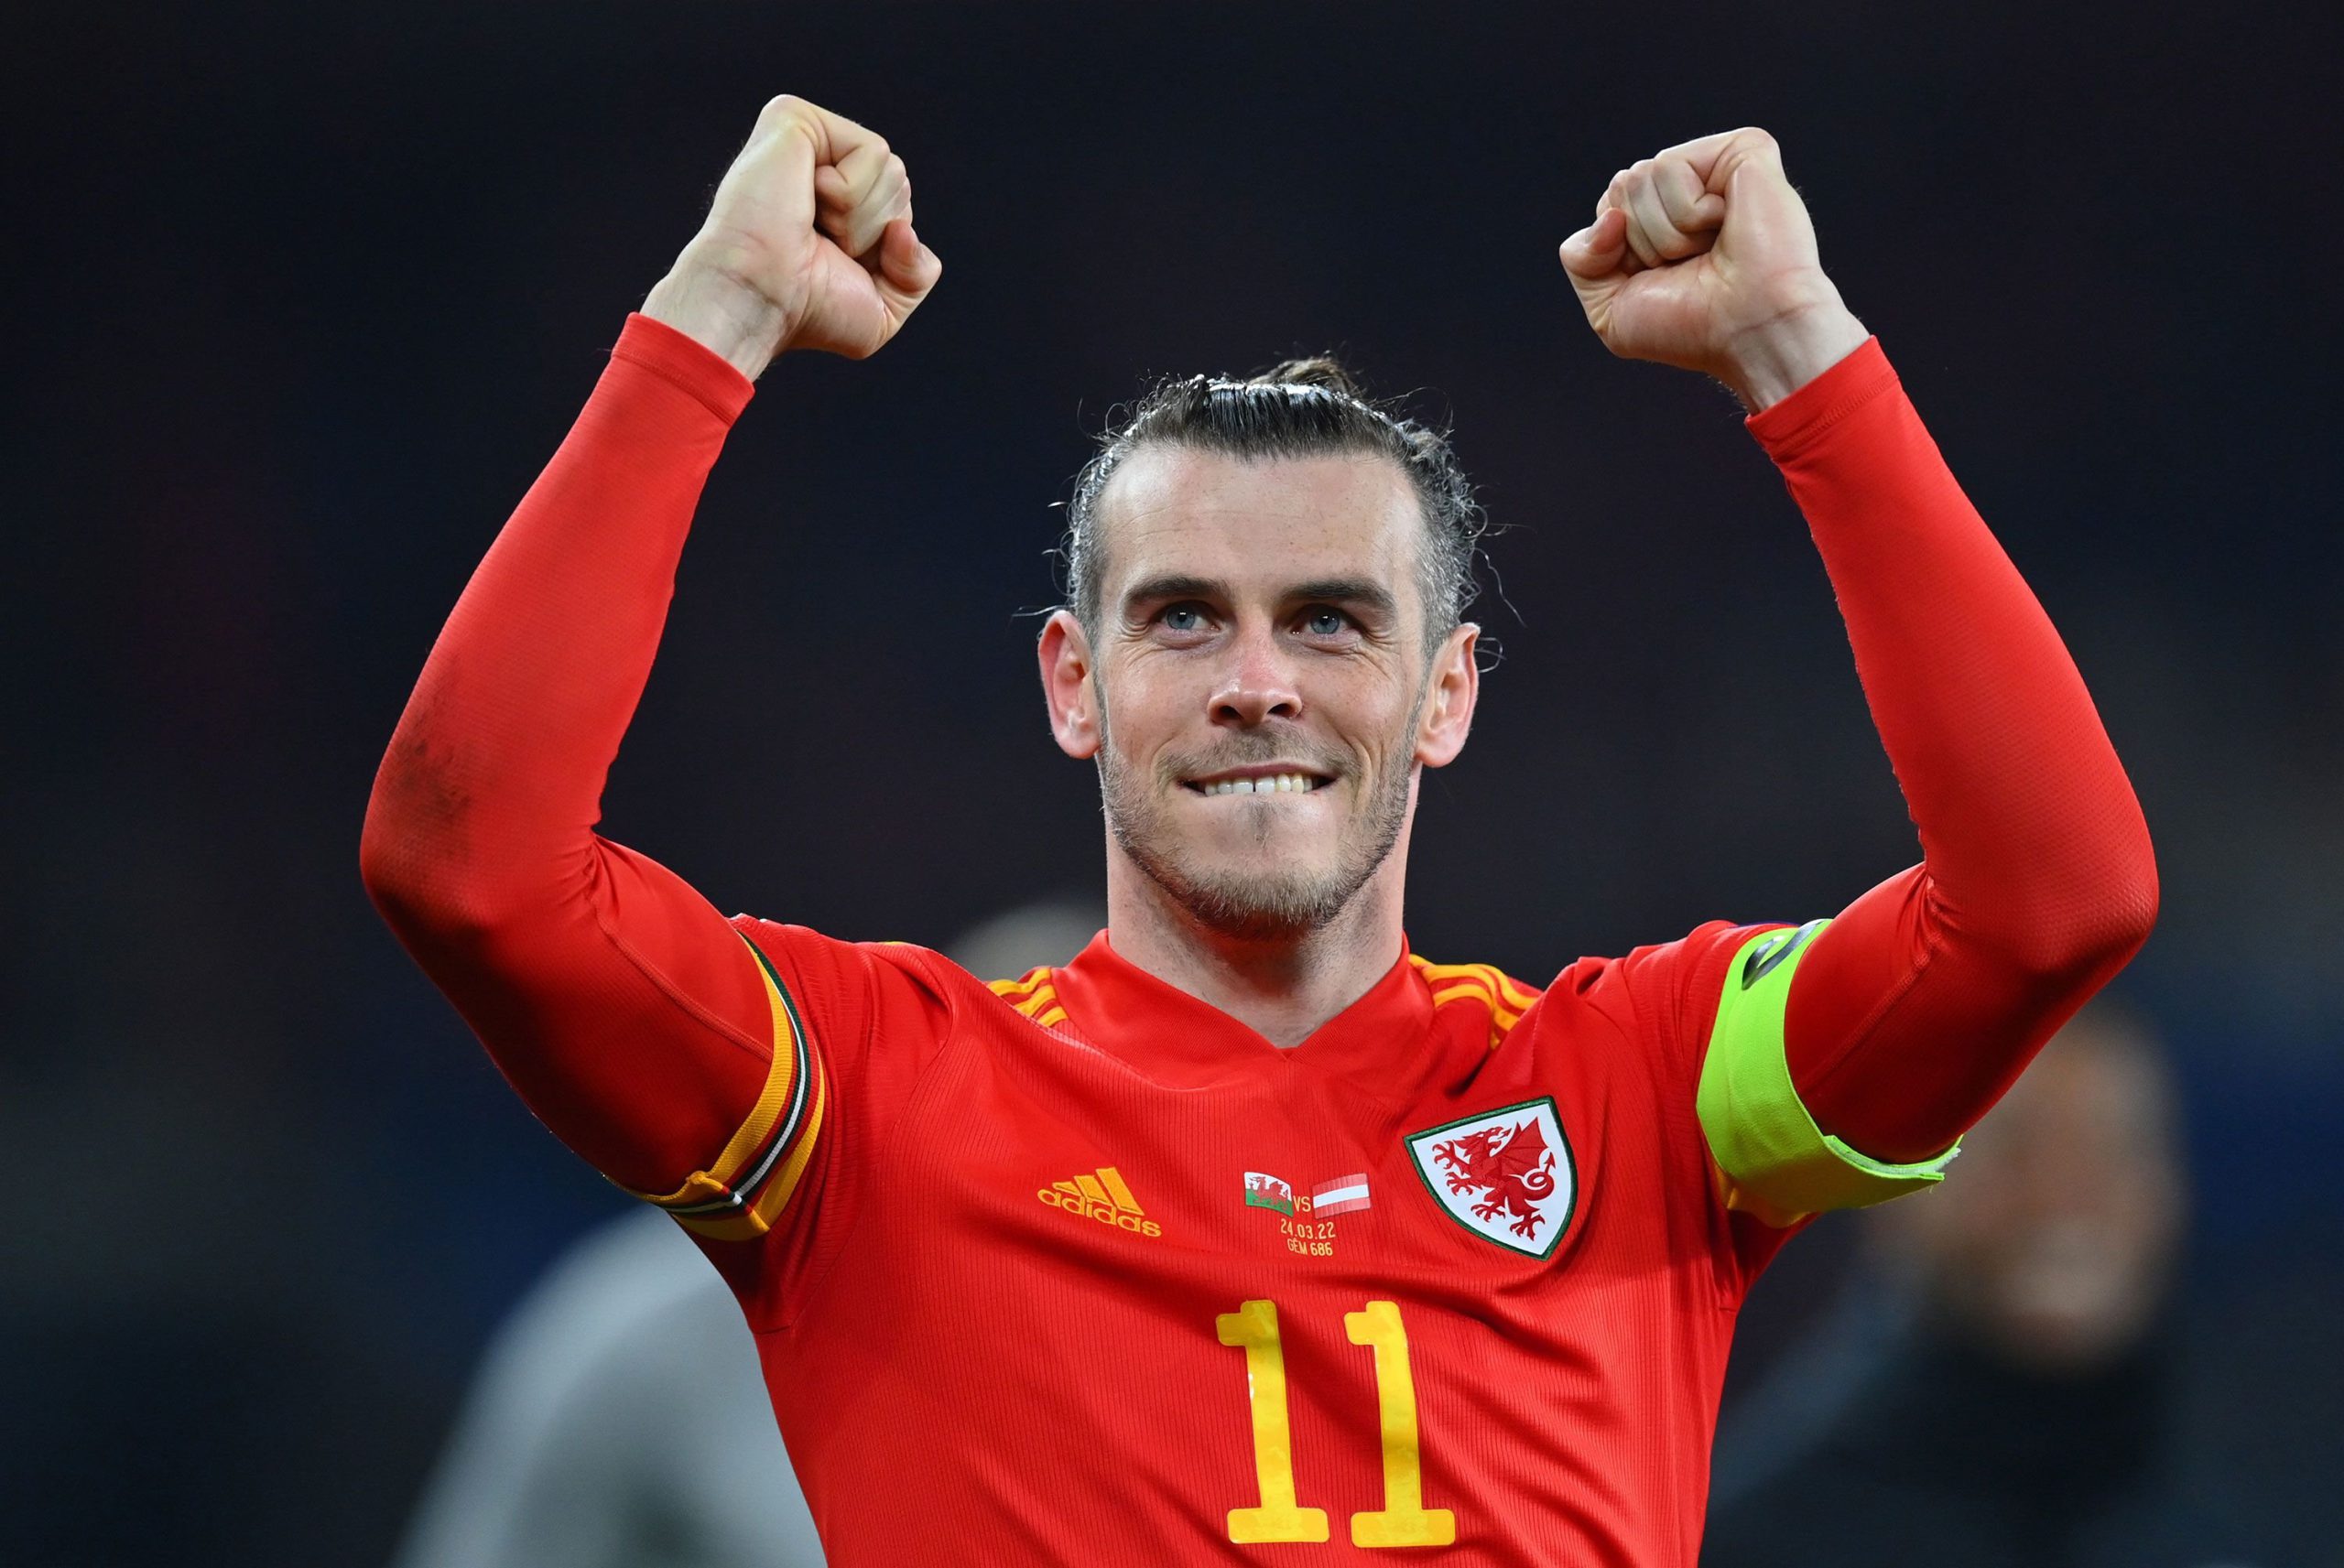  La numai 33 de ani, galezul Gareth Bale şi-a anunţat retragerea din activitate